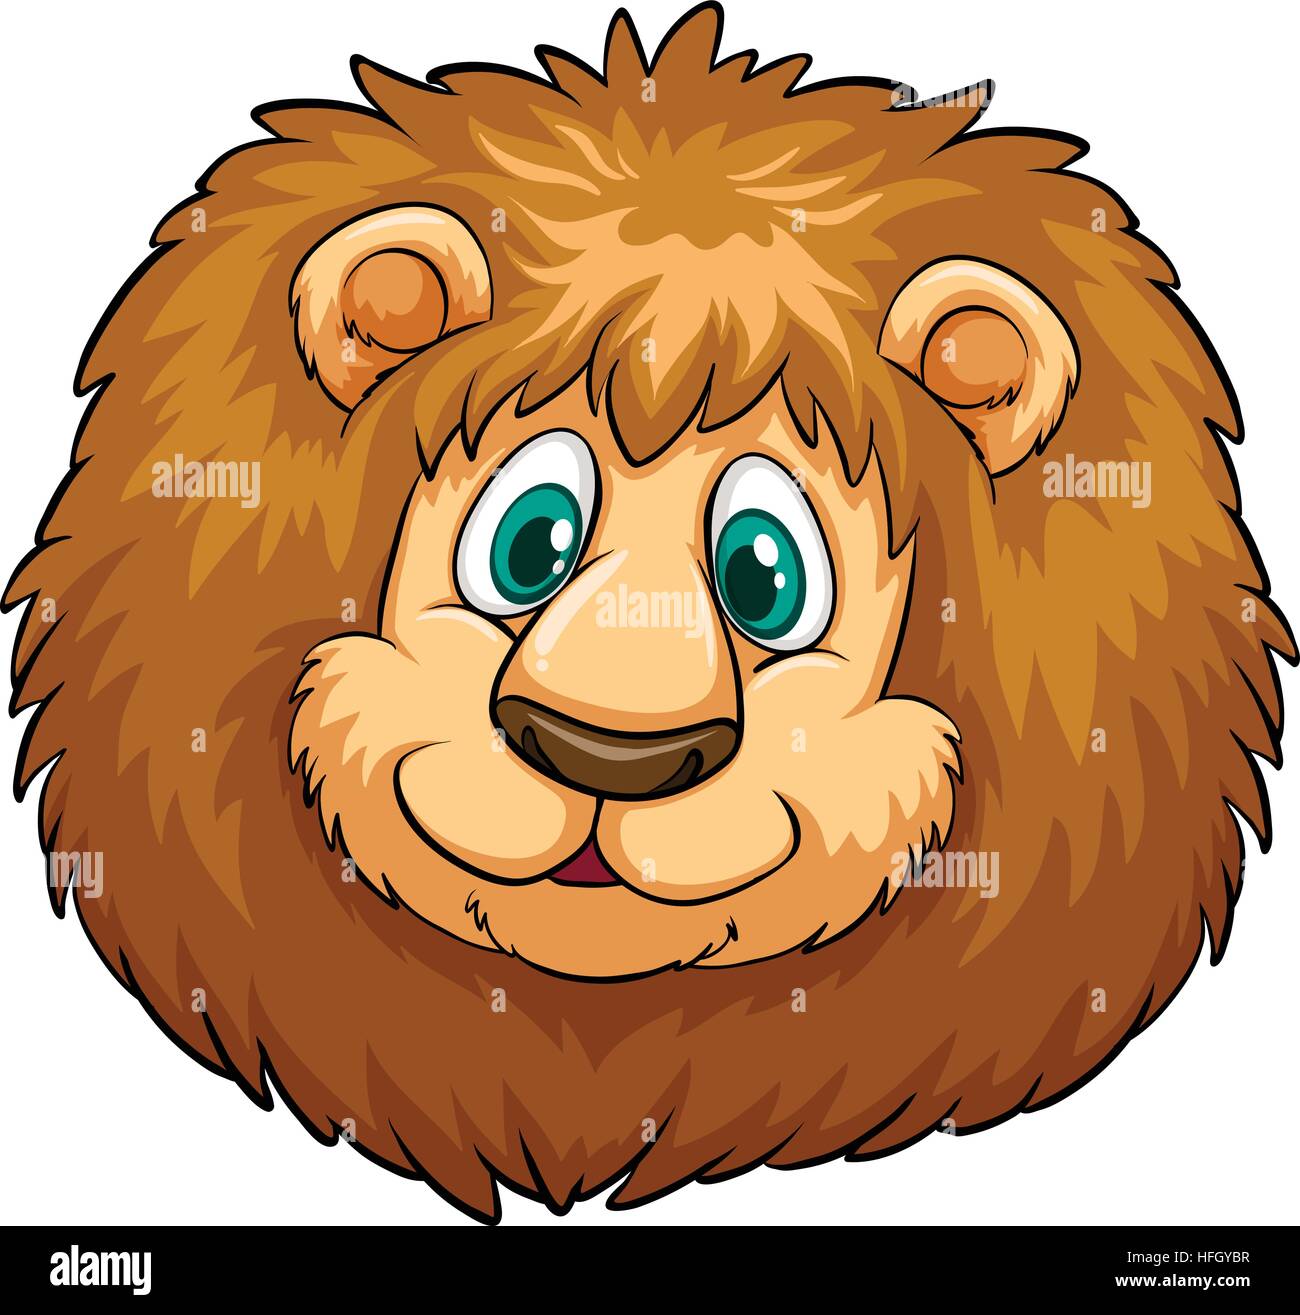 Clipart di leone immagini e fotografie stock ad alta risoluzione - Alamy